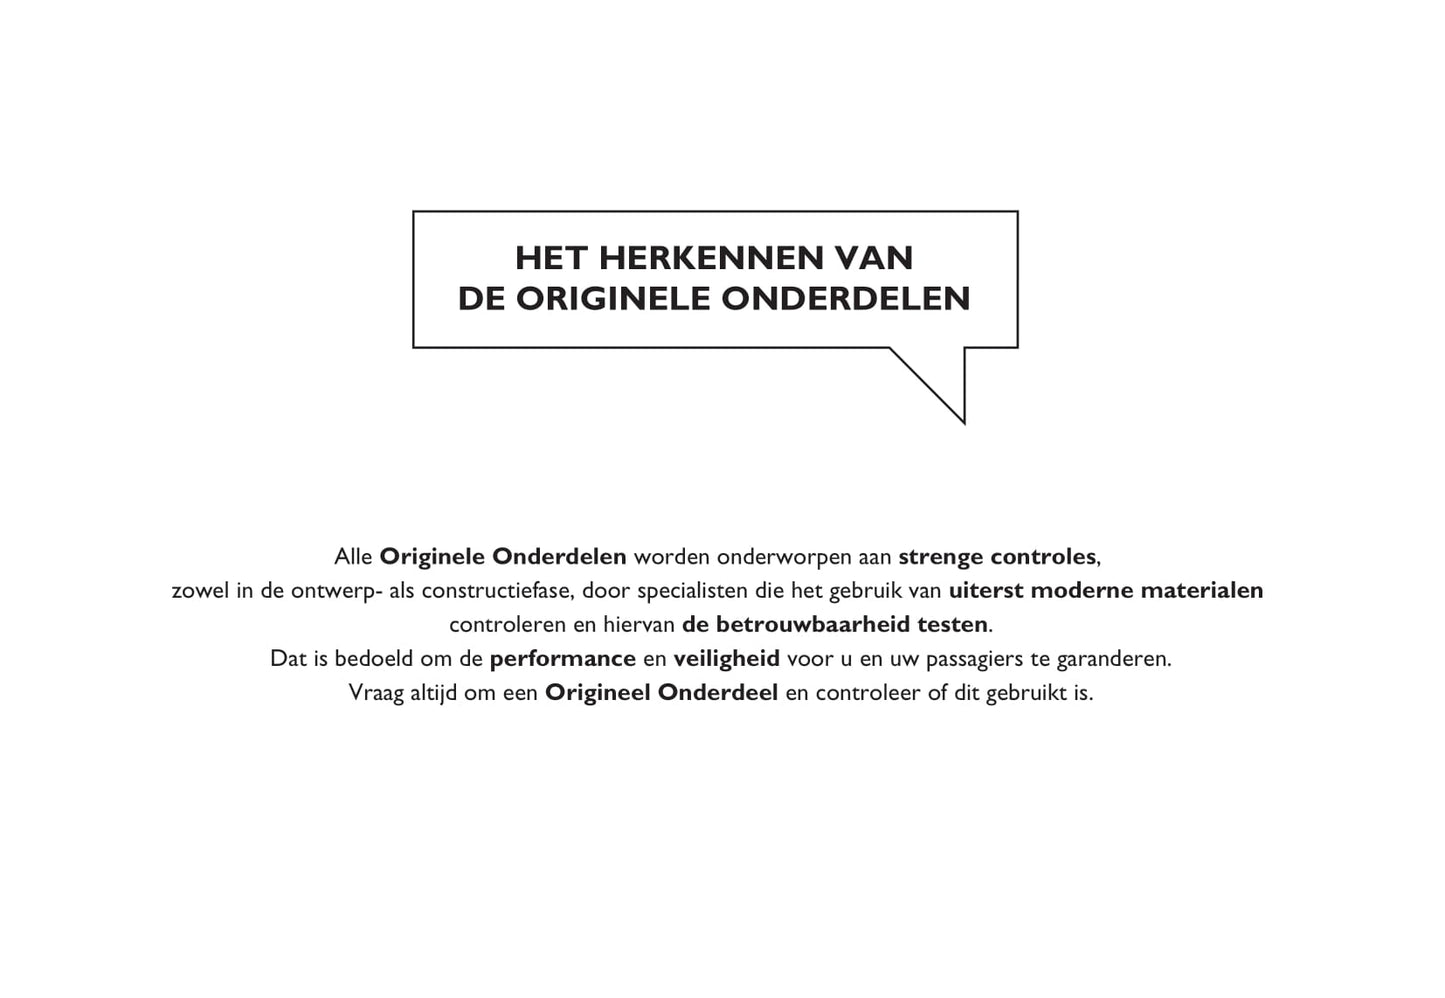 2012-2013 Fiat Qubo Owner's Manual | Dutch